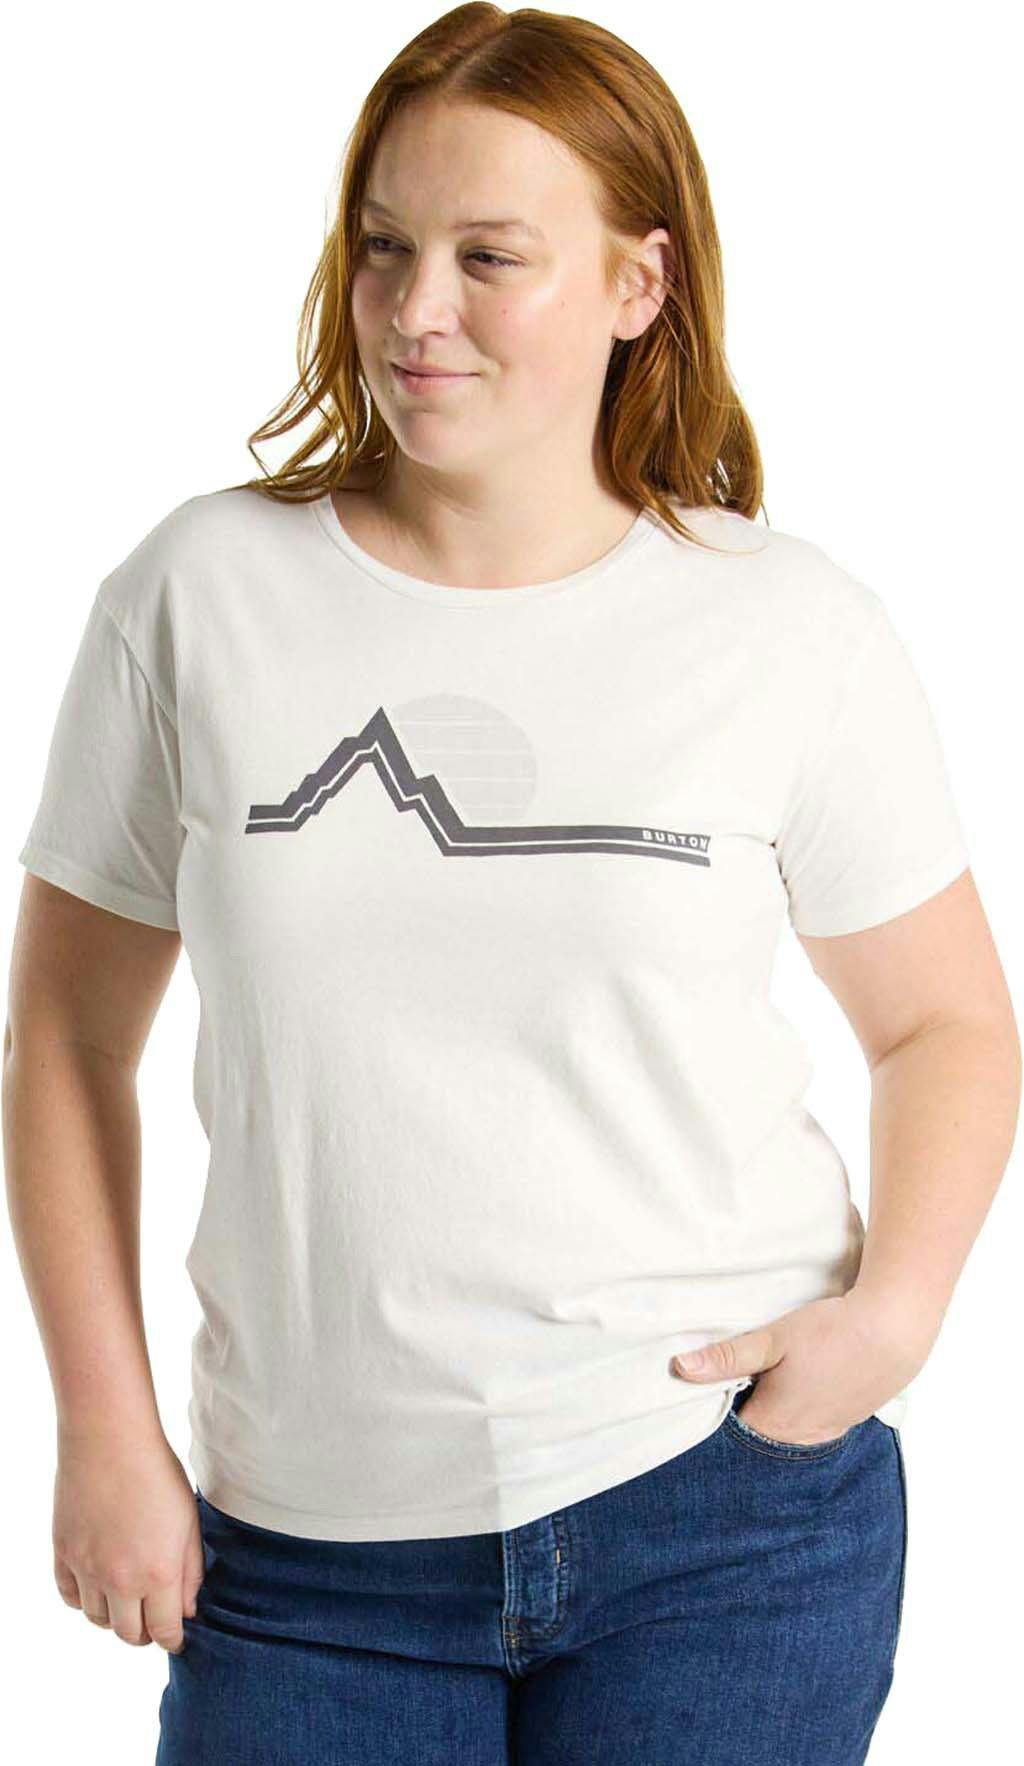 Image de produit pour T-shirt à manches courtes Classic Retro - Femme